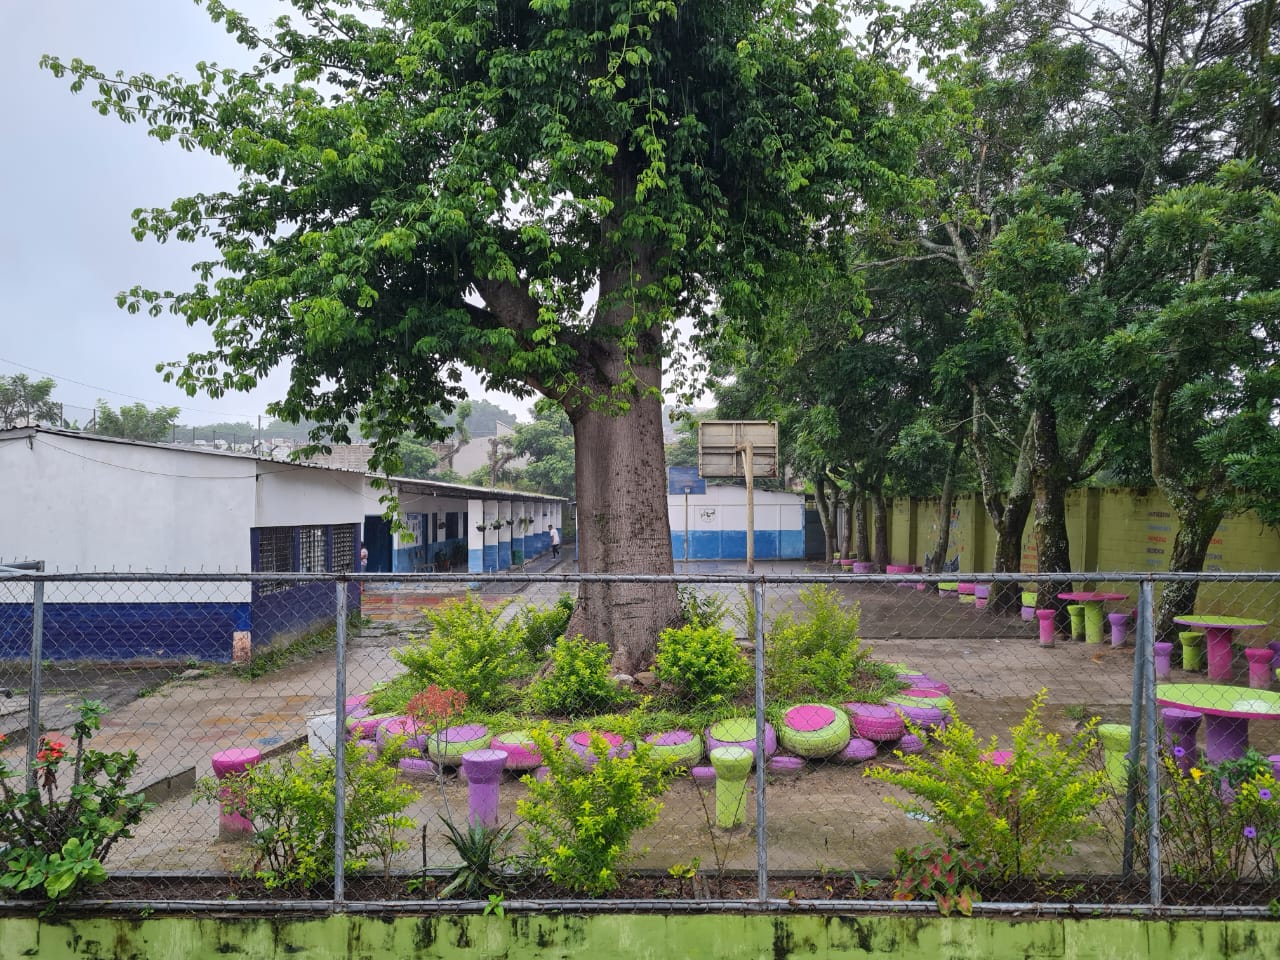 School garden